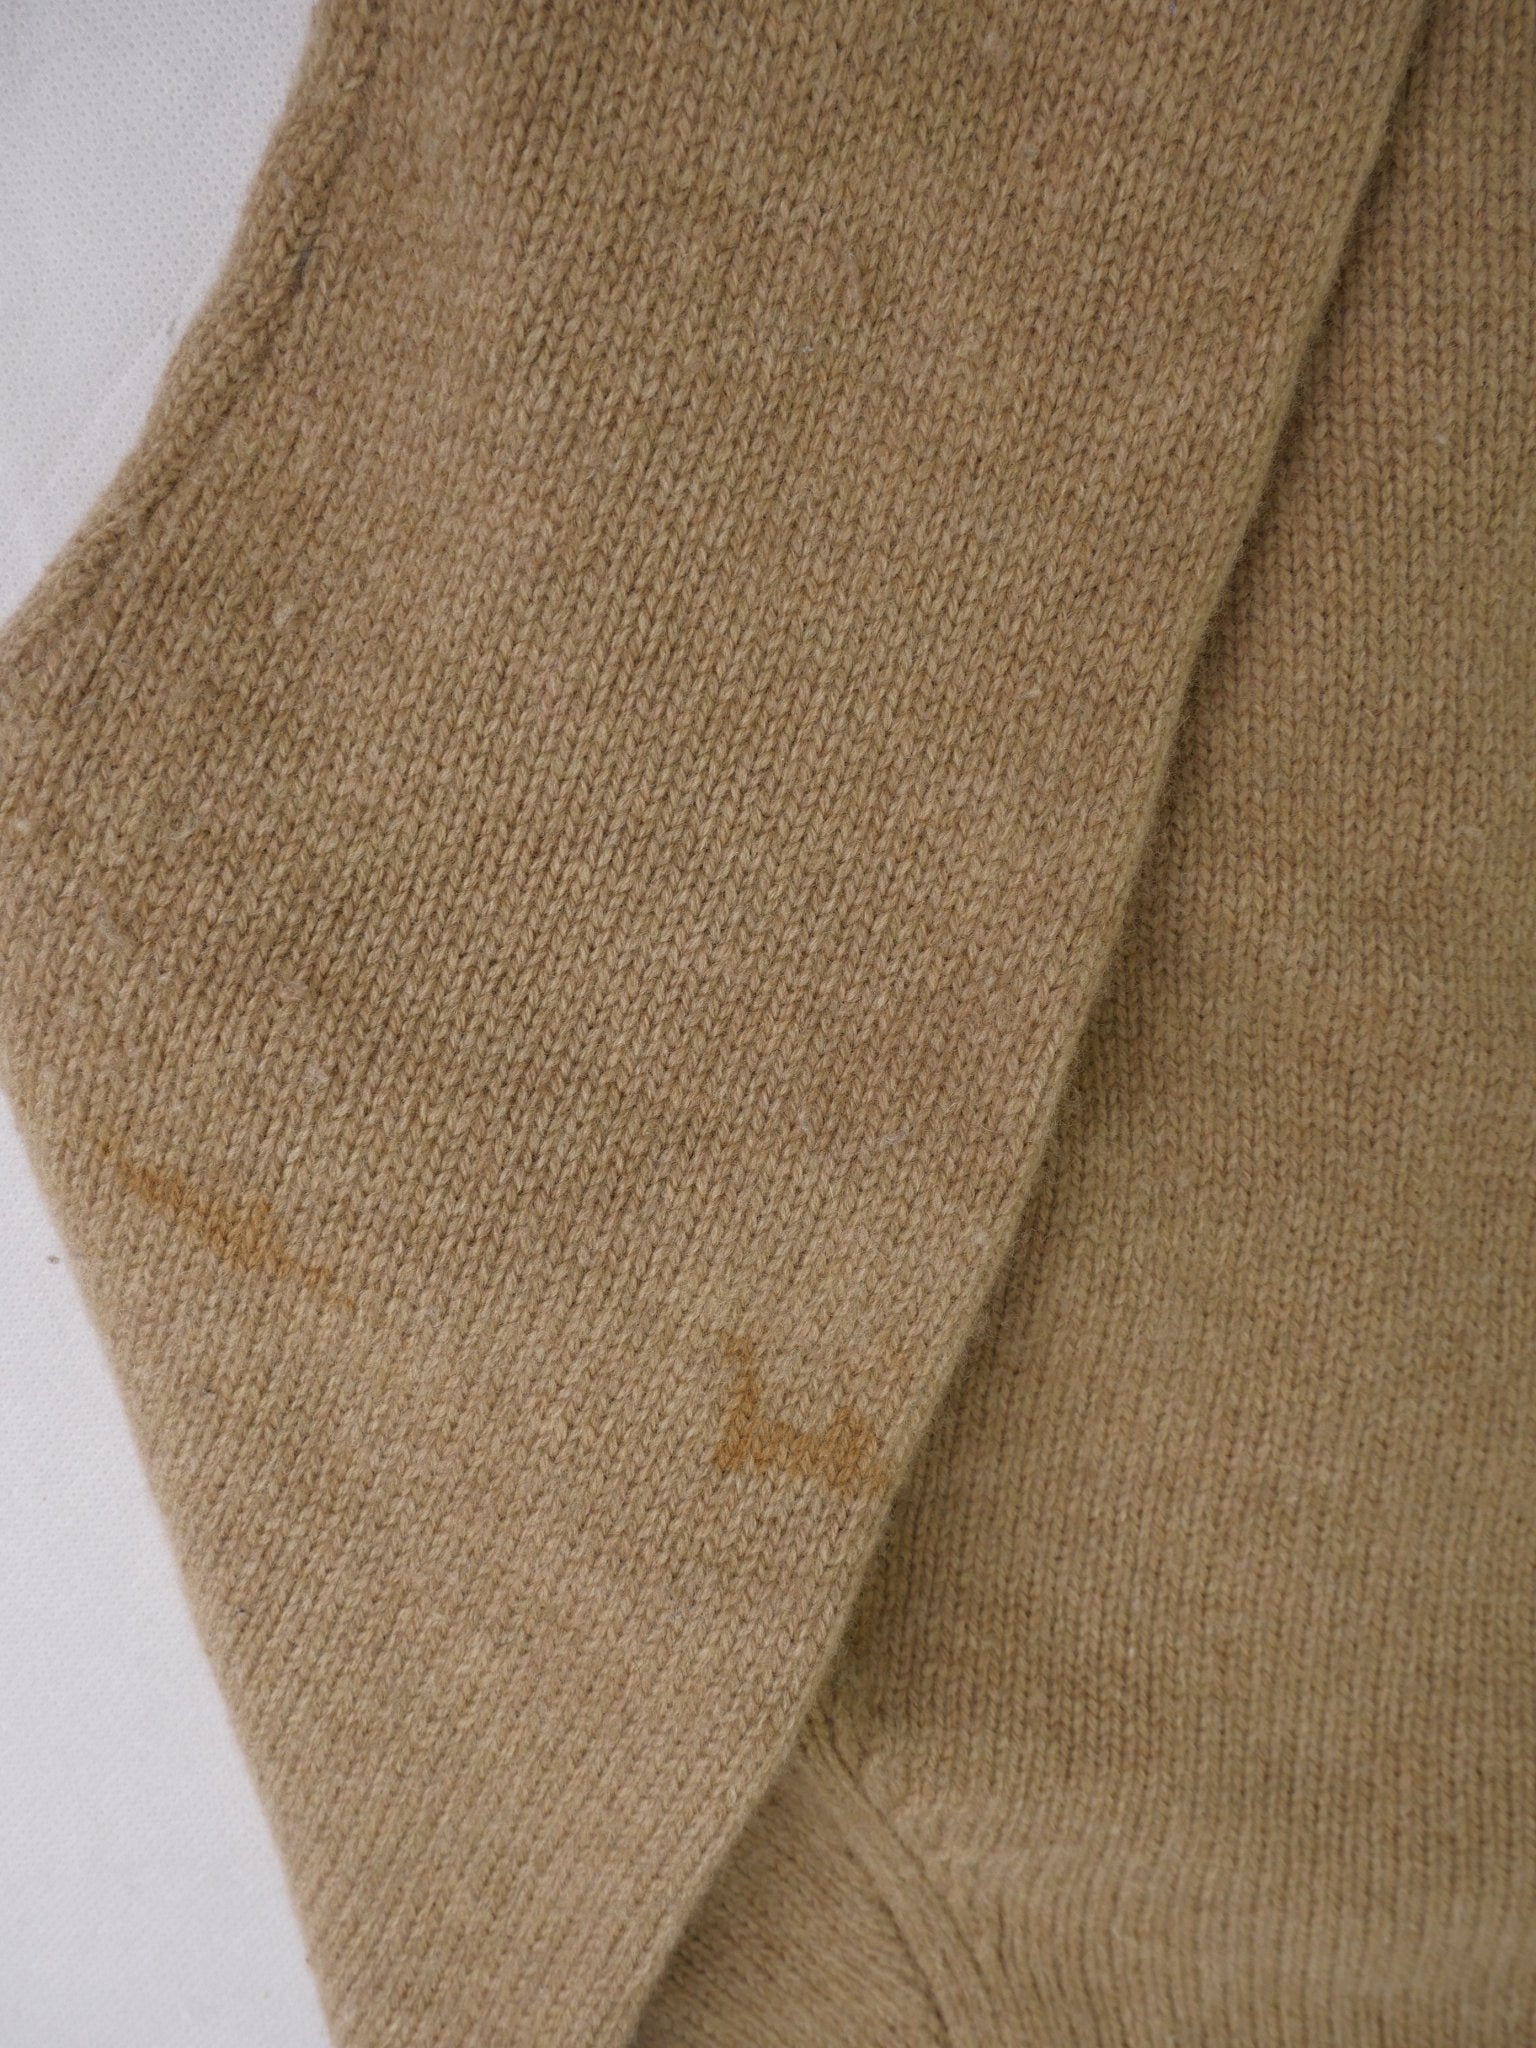 Polo Ralph Lauren basic wool brown Half Zip Sweater - Peeces